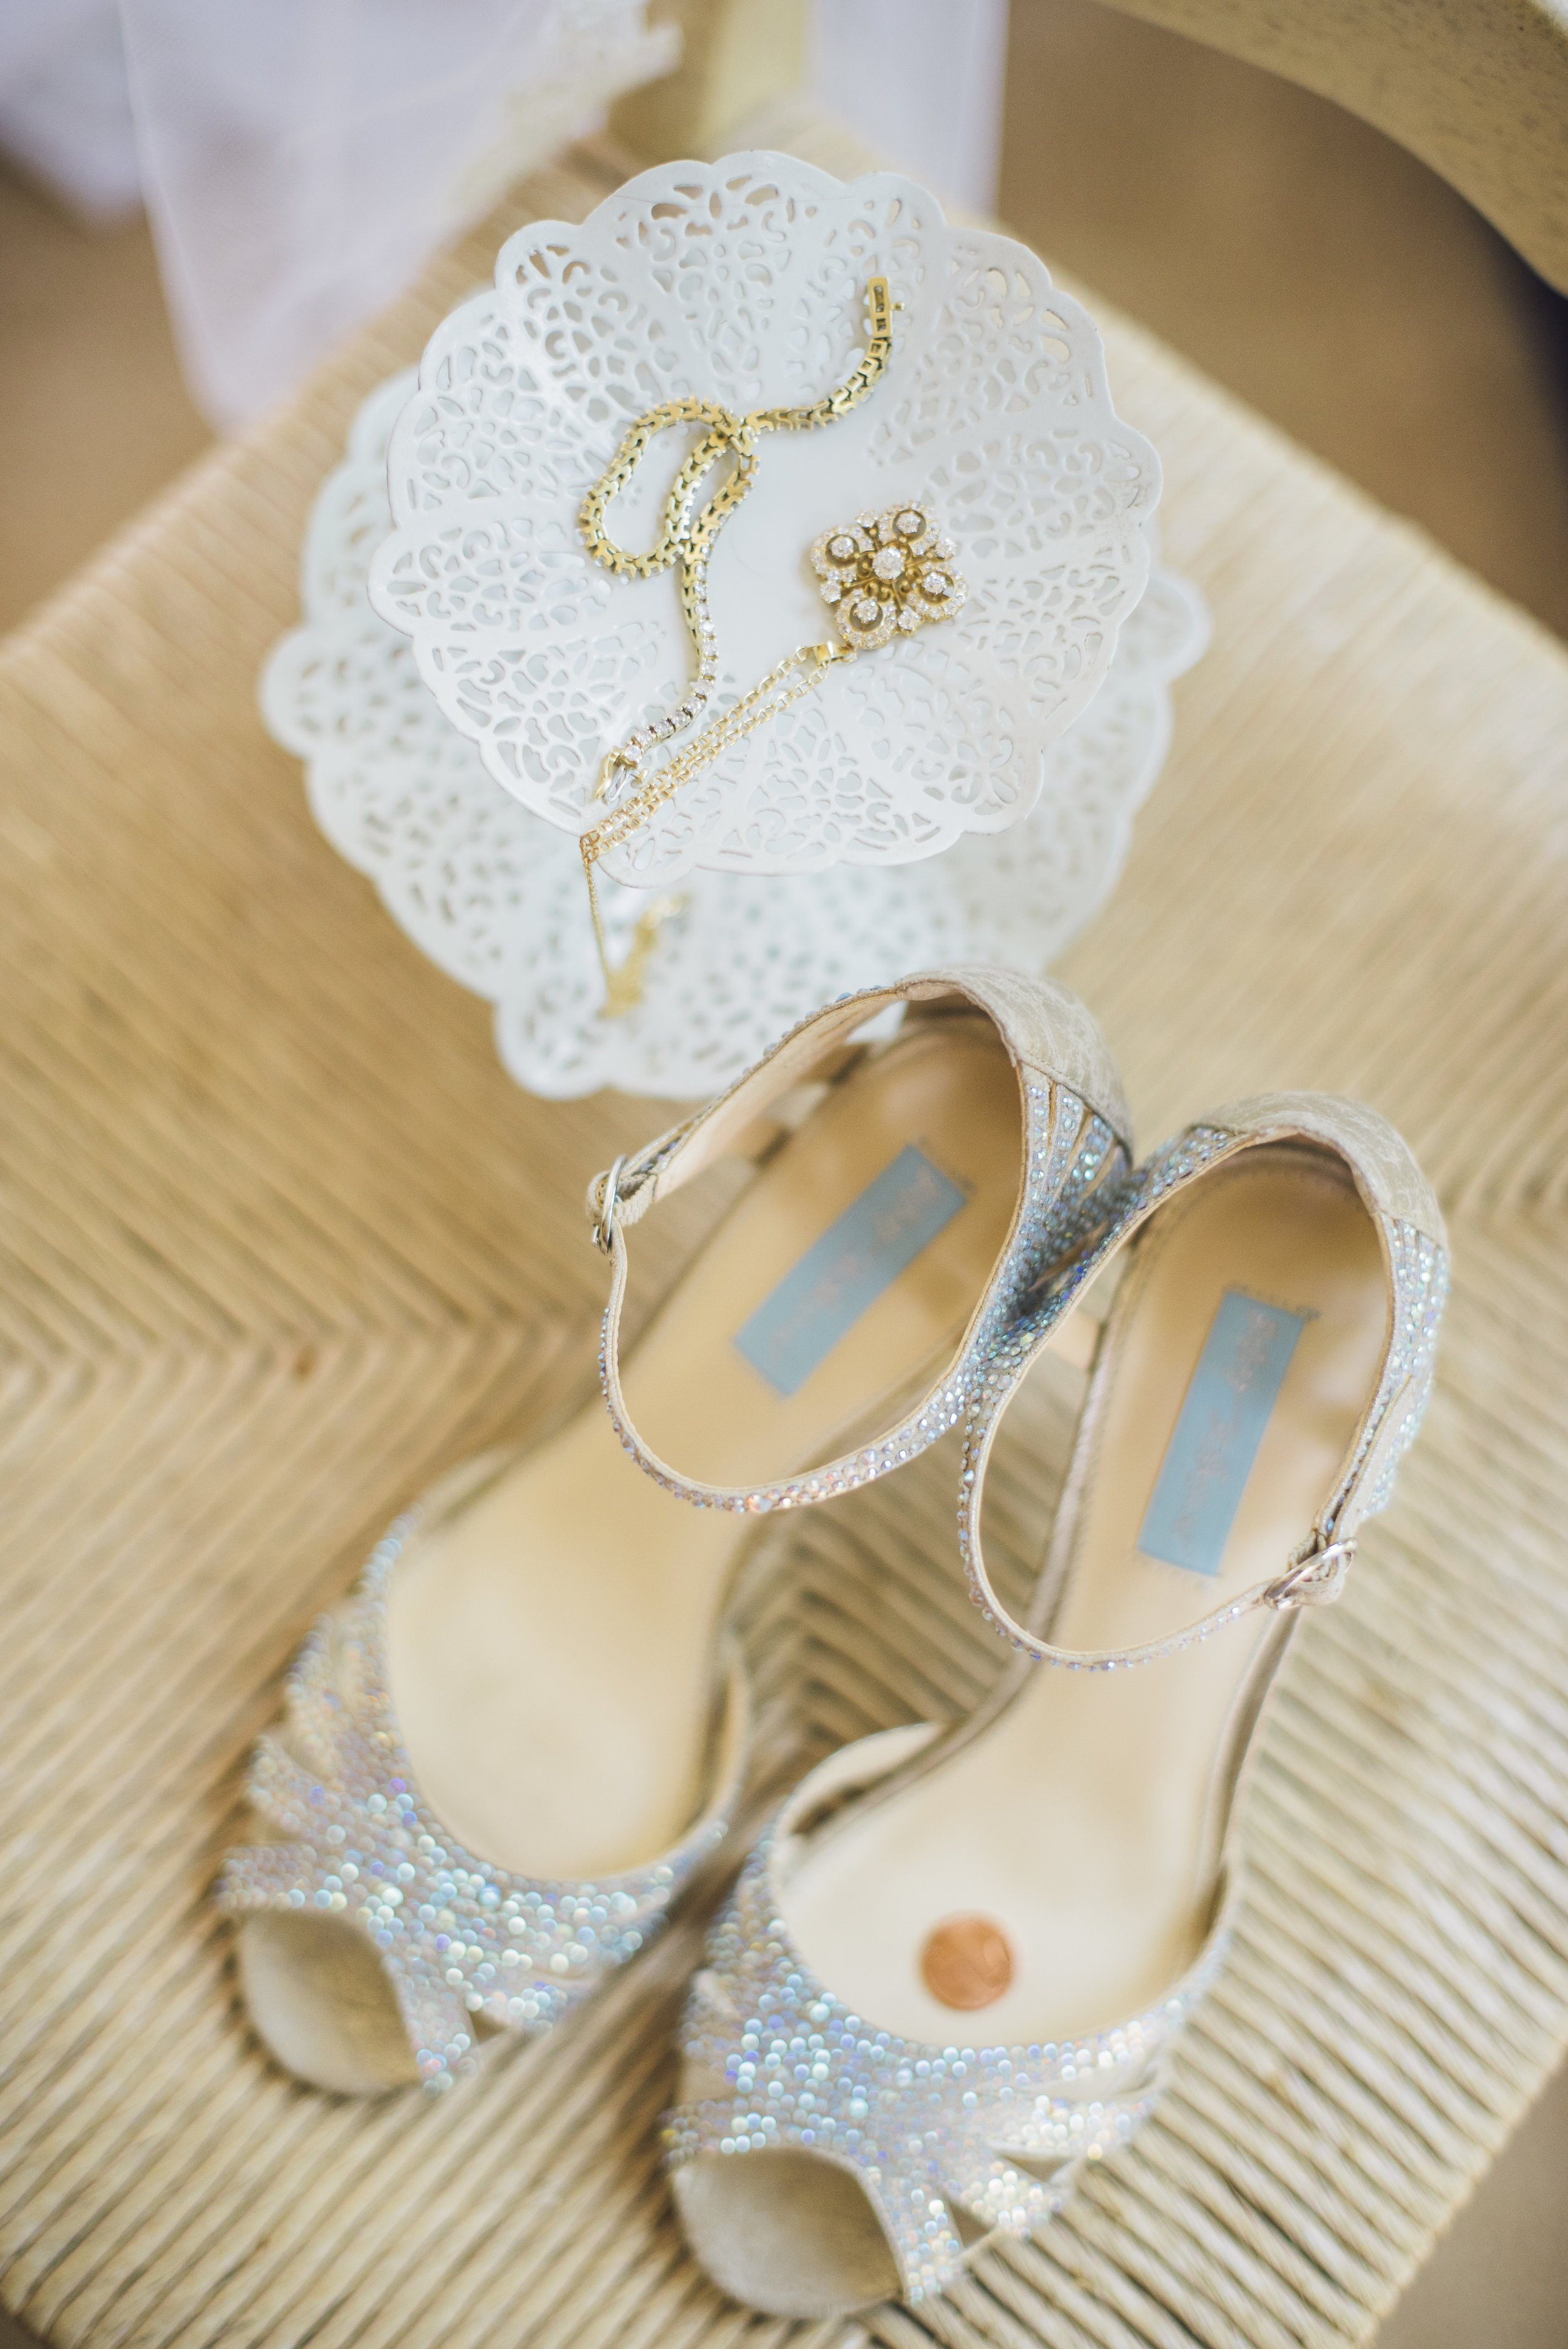 www.santabarbarawedding.com | Unitarian Society | Cara Robbins | Percy Sales Events | Bride's Shoes